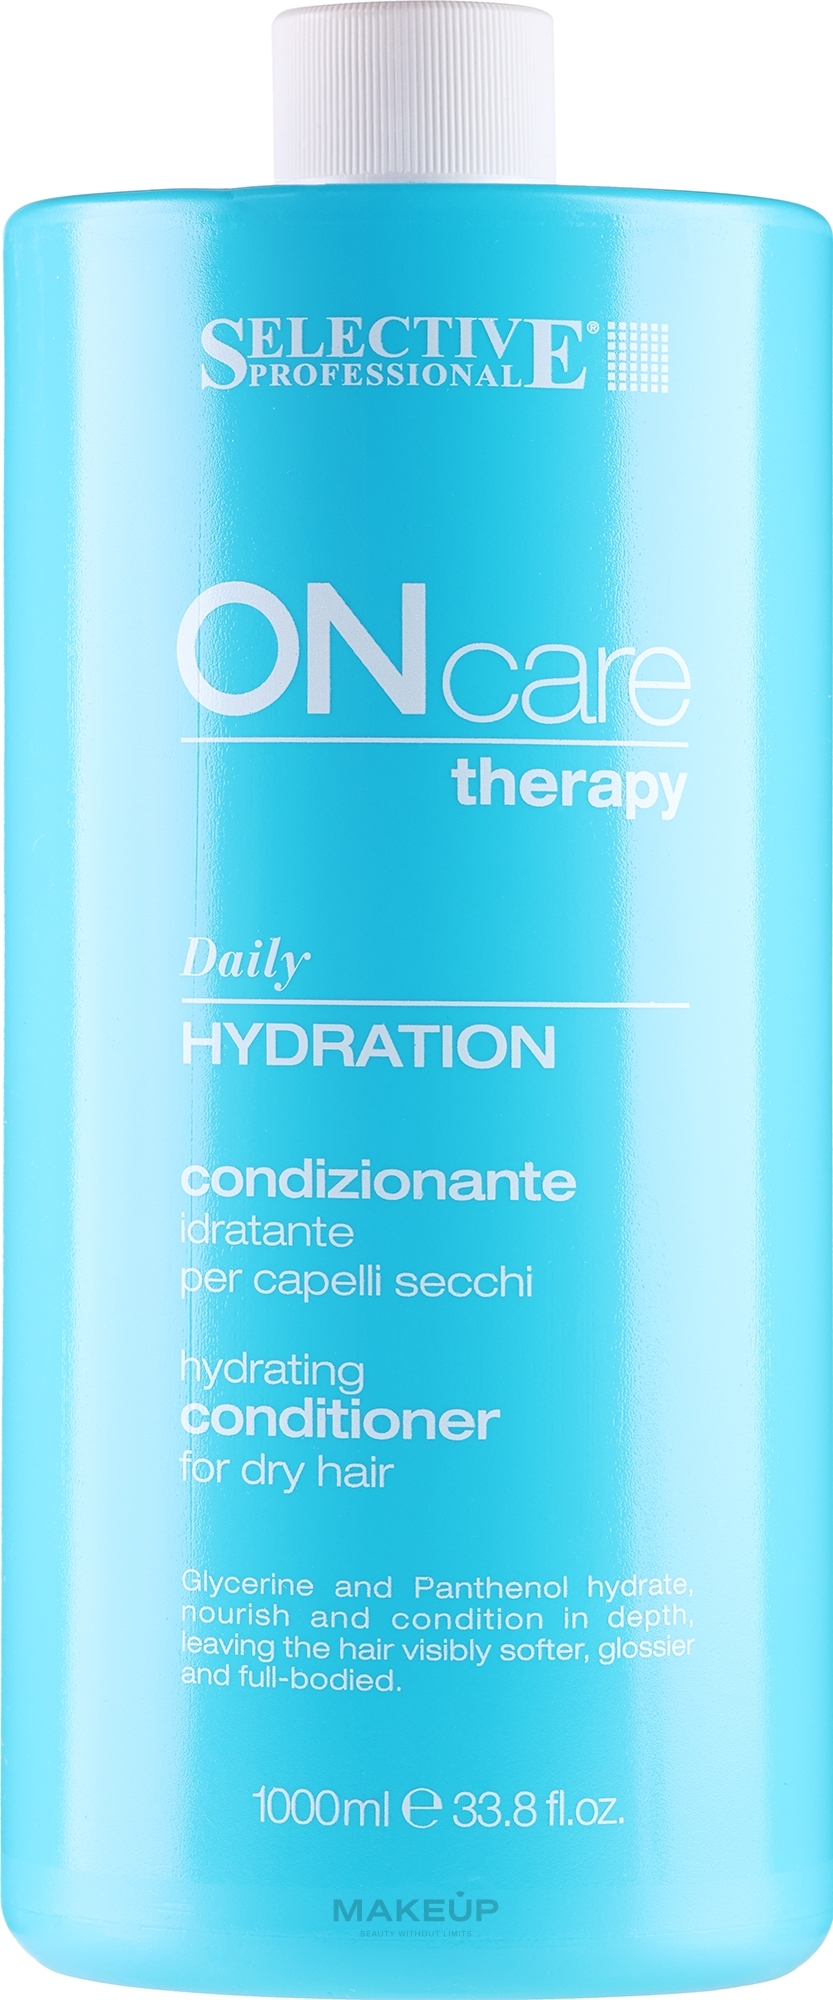 Зволожувальний кондиціонер для волосся - Selective Professional On Care Therapy Hydration Conditioner — фото 1000ml